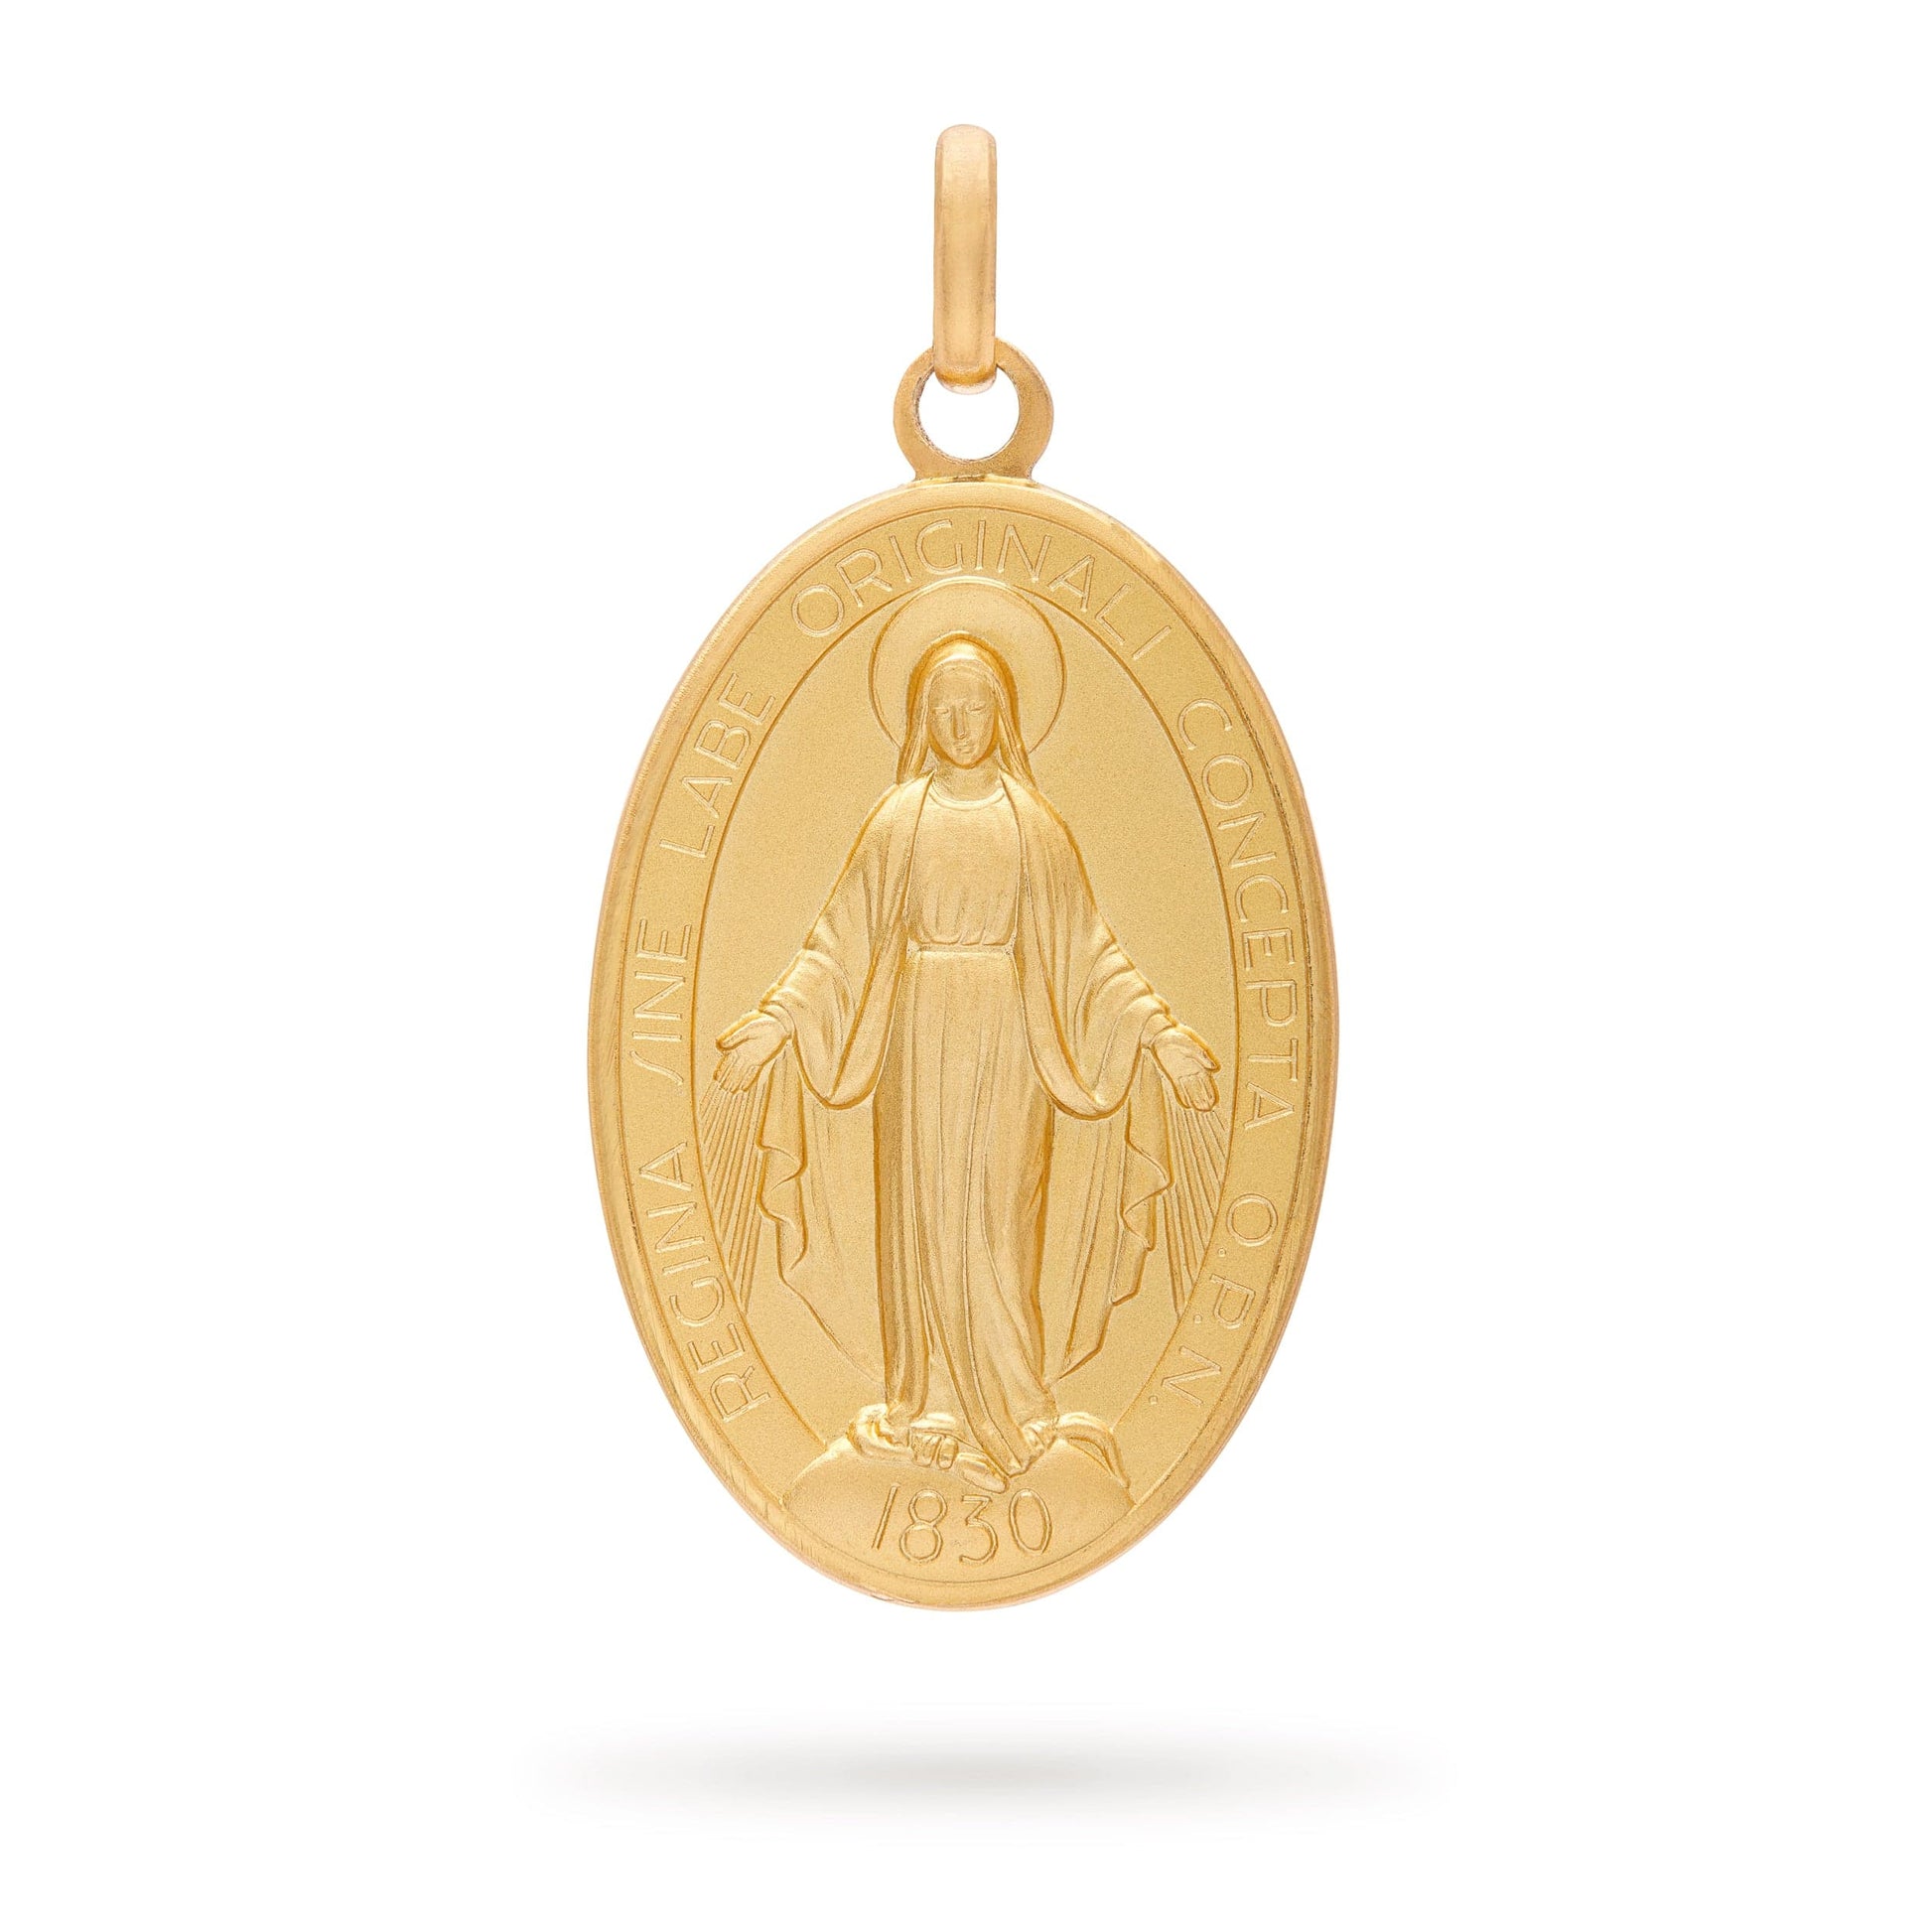  Colgante de oro amarillo de 14 k con medalla milagrosa